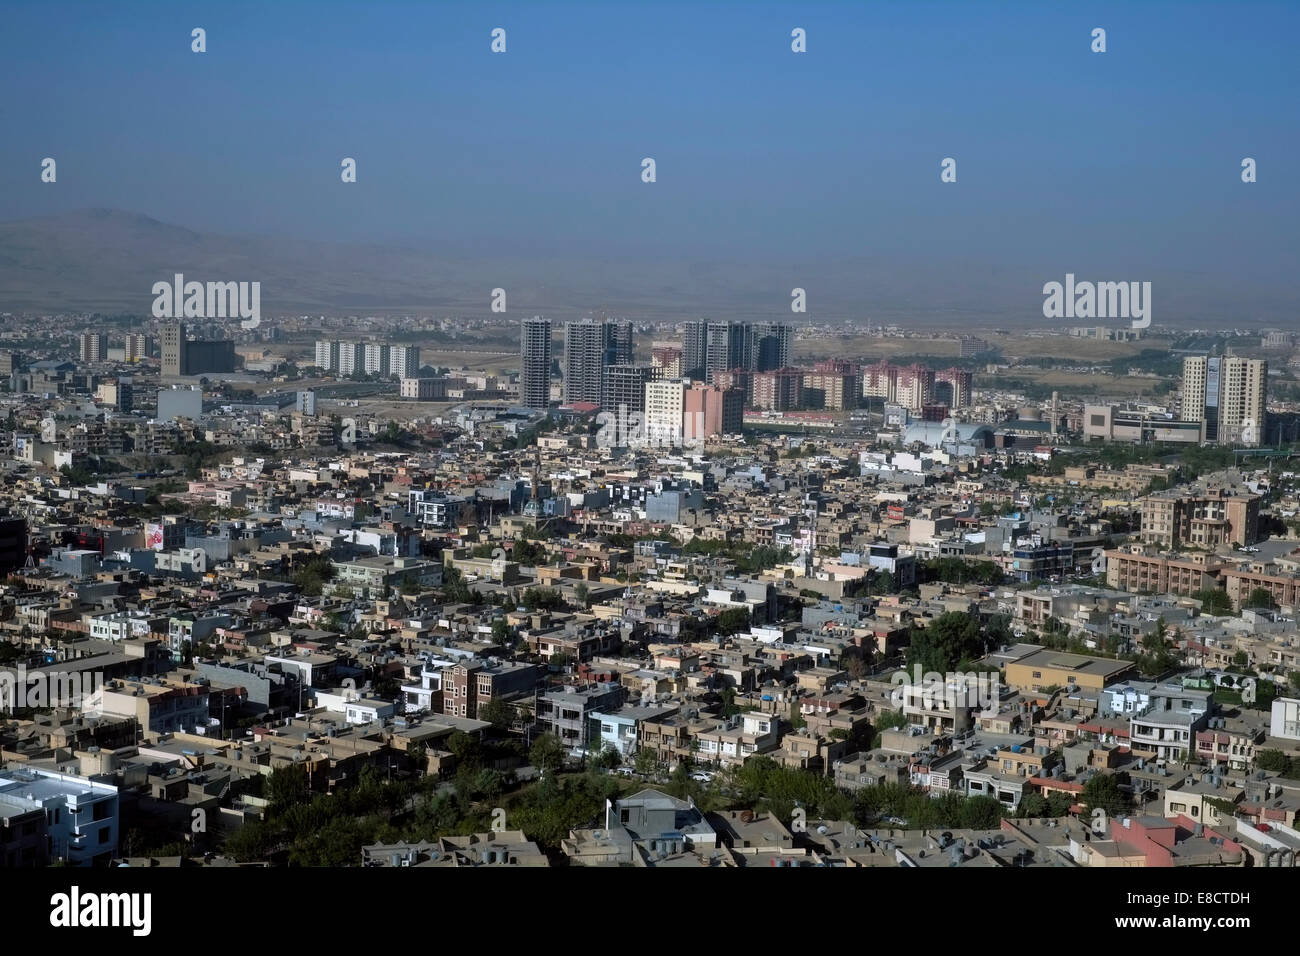 Vista panoramica di Sulaymaniyahalso anche chiamato Slemani, una città nel Kurdistan iracheno nella parte nord-orientale dell'Iraq Foto Stock